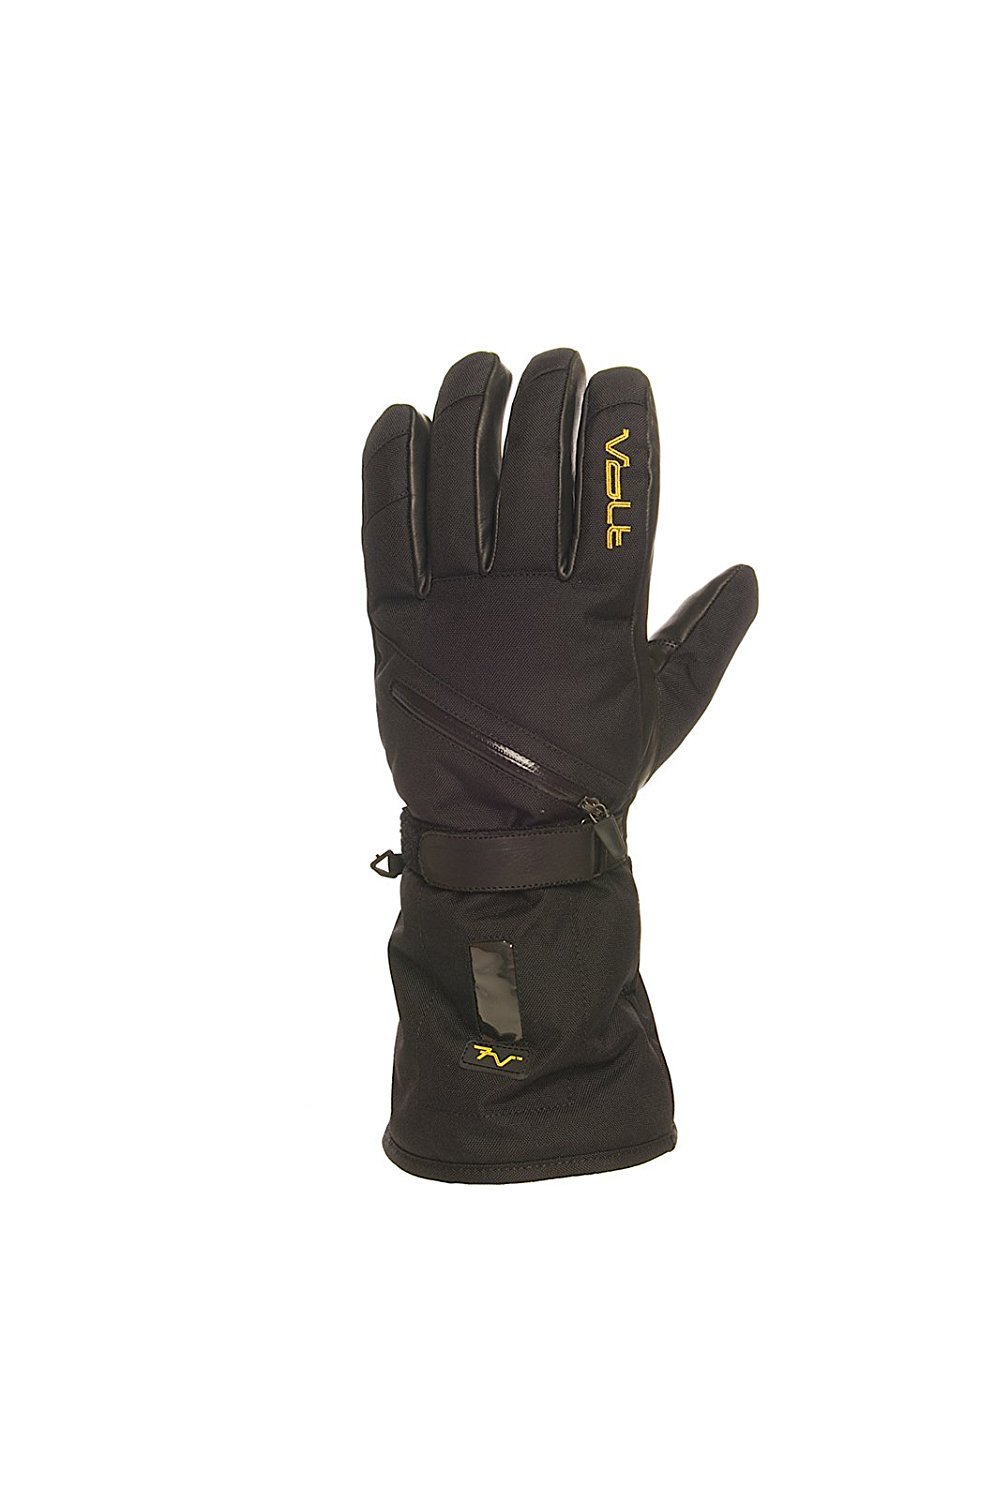 Volt Tatra Heated Gloves - 02